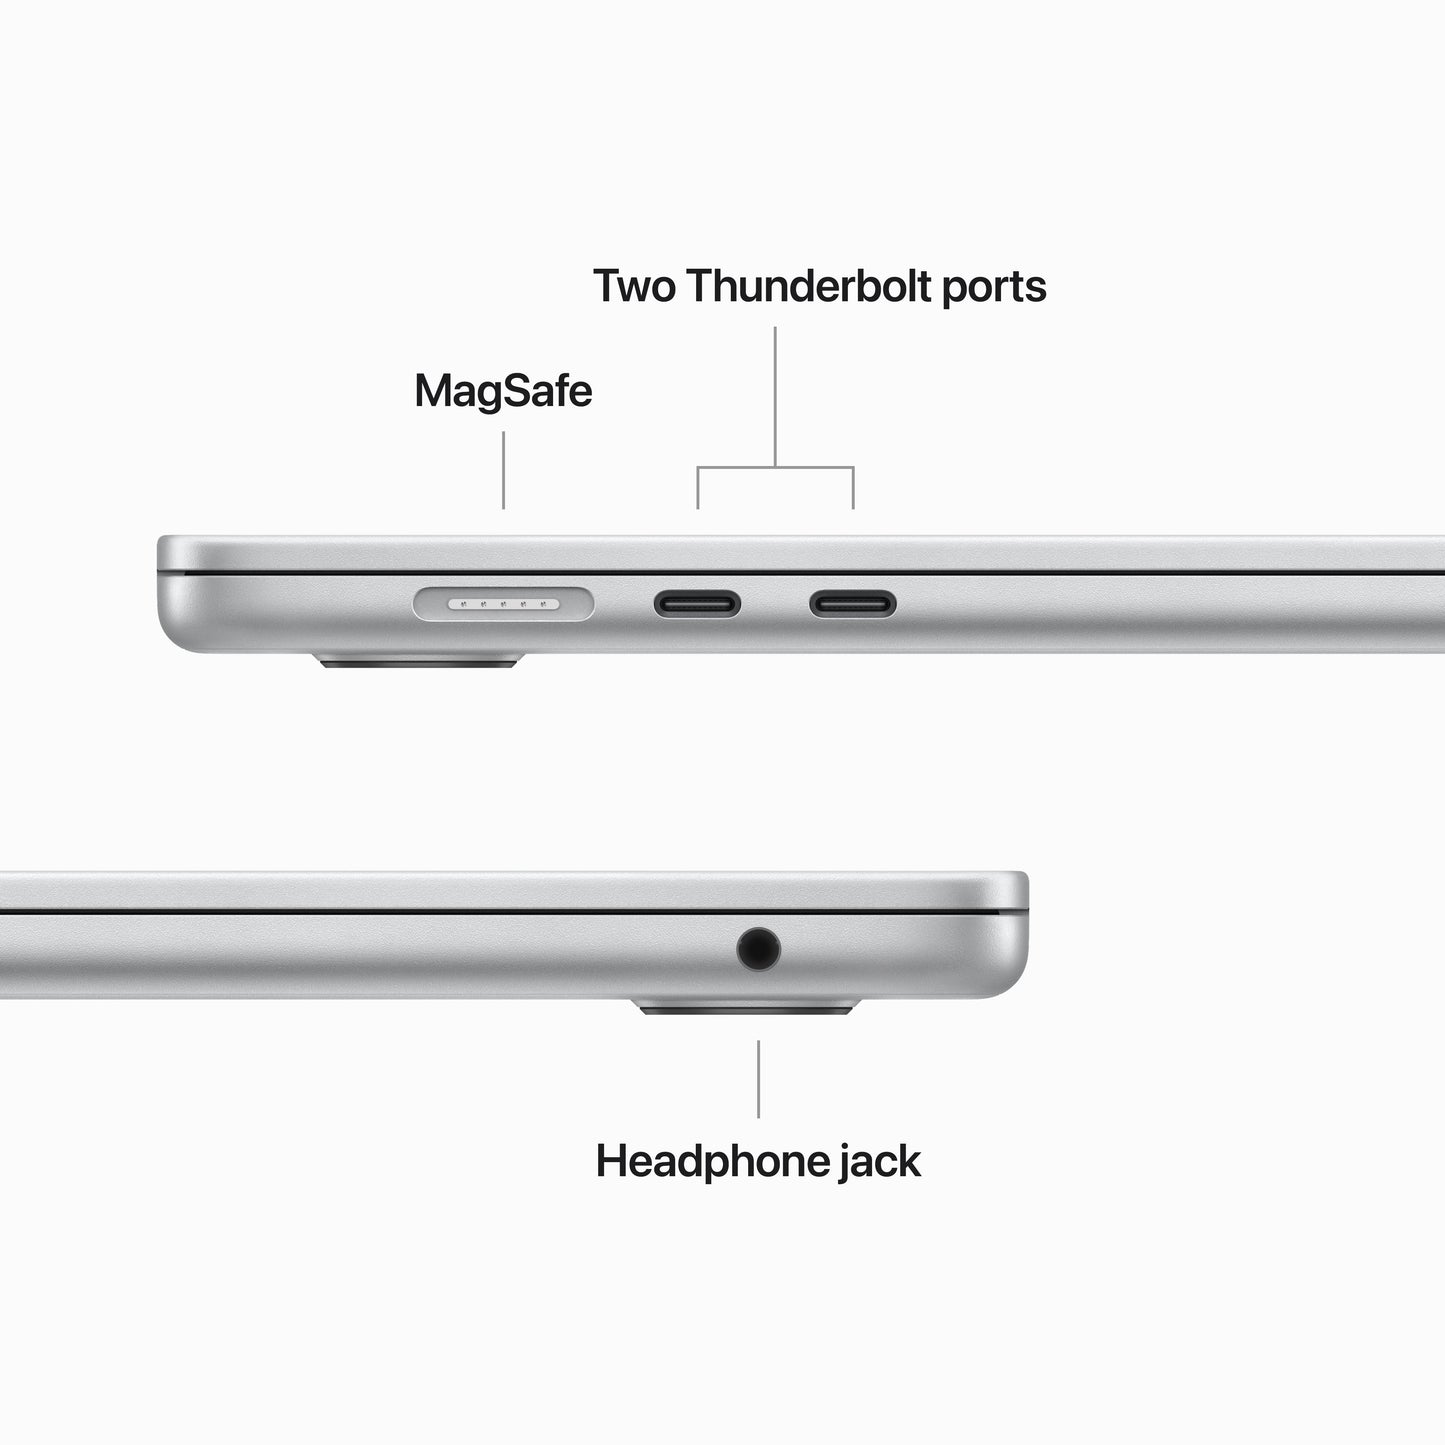 MacBook Air مقاس 15 انش: شريحة Apple M2 مع وحدة معالجة مركزية 8 نوى ووحدة معالجة رسومات 10 نوى، 256 جيجابايت SSD - فضي